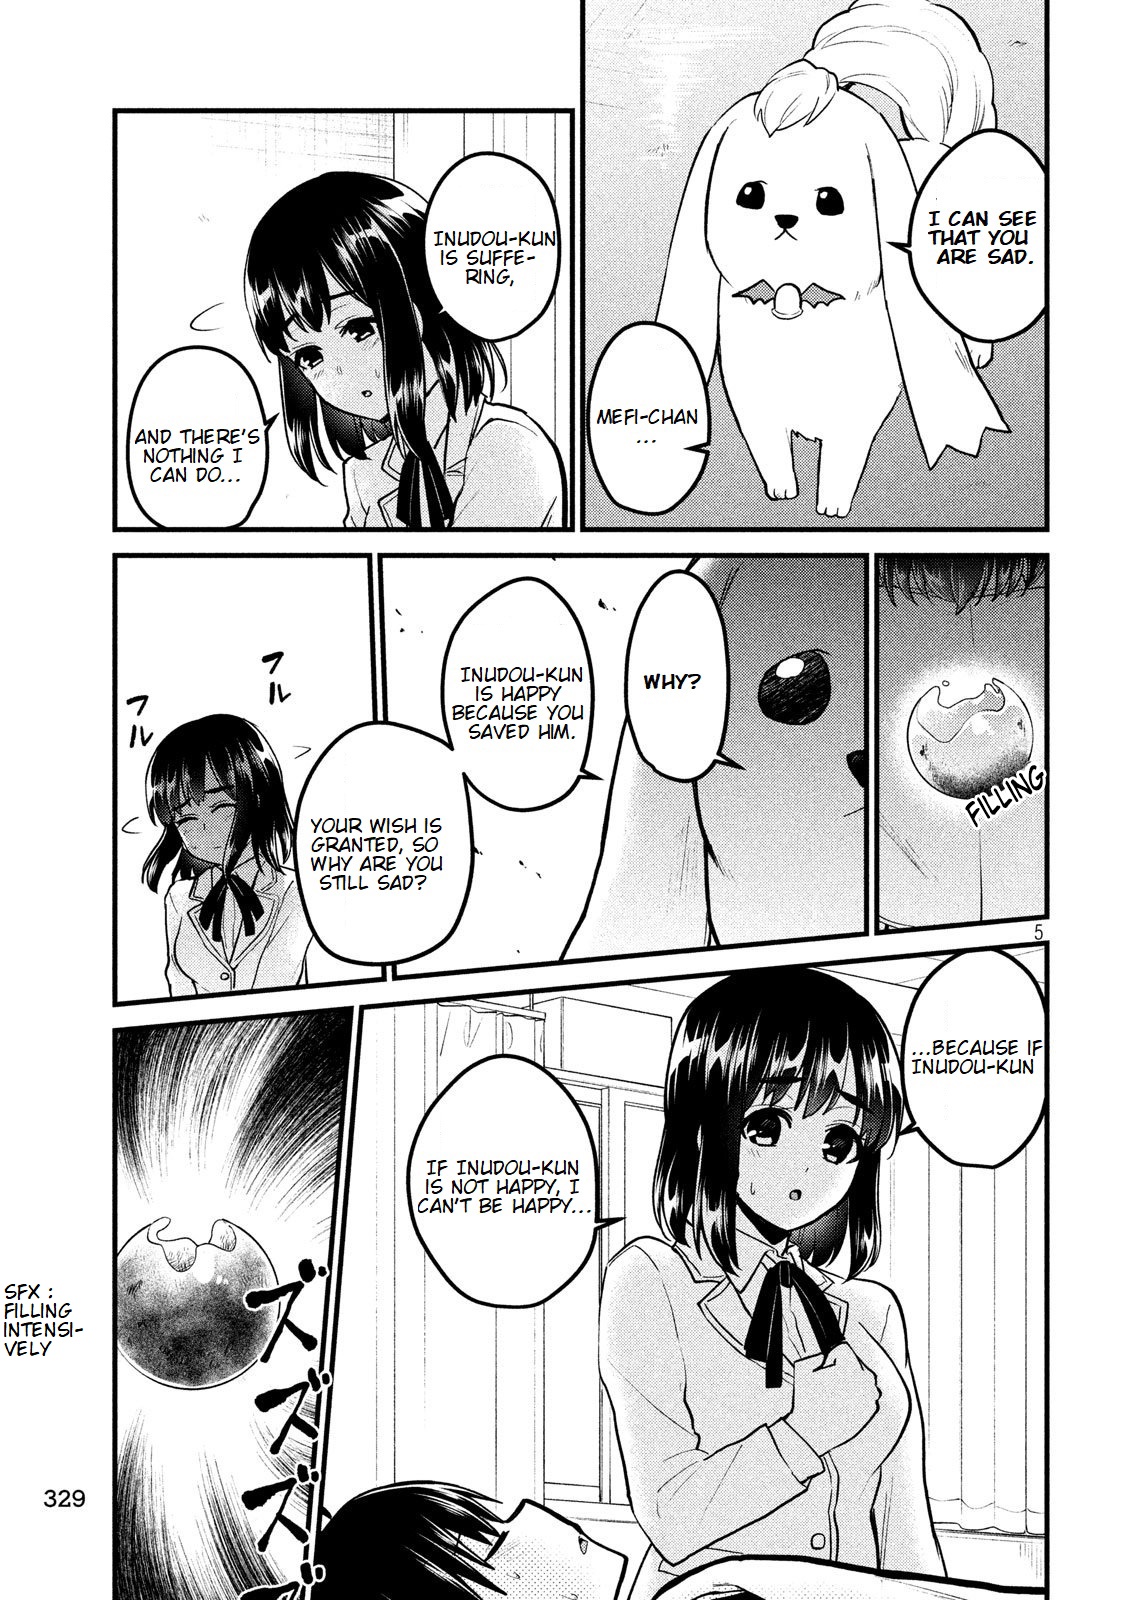 Otaku No Tonari Wa Erufu Desuka? - 6 page 6